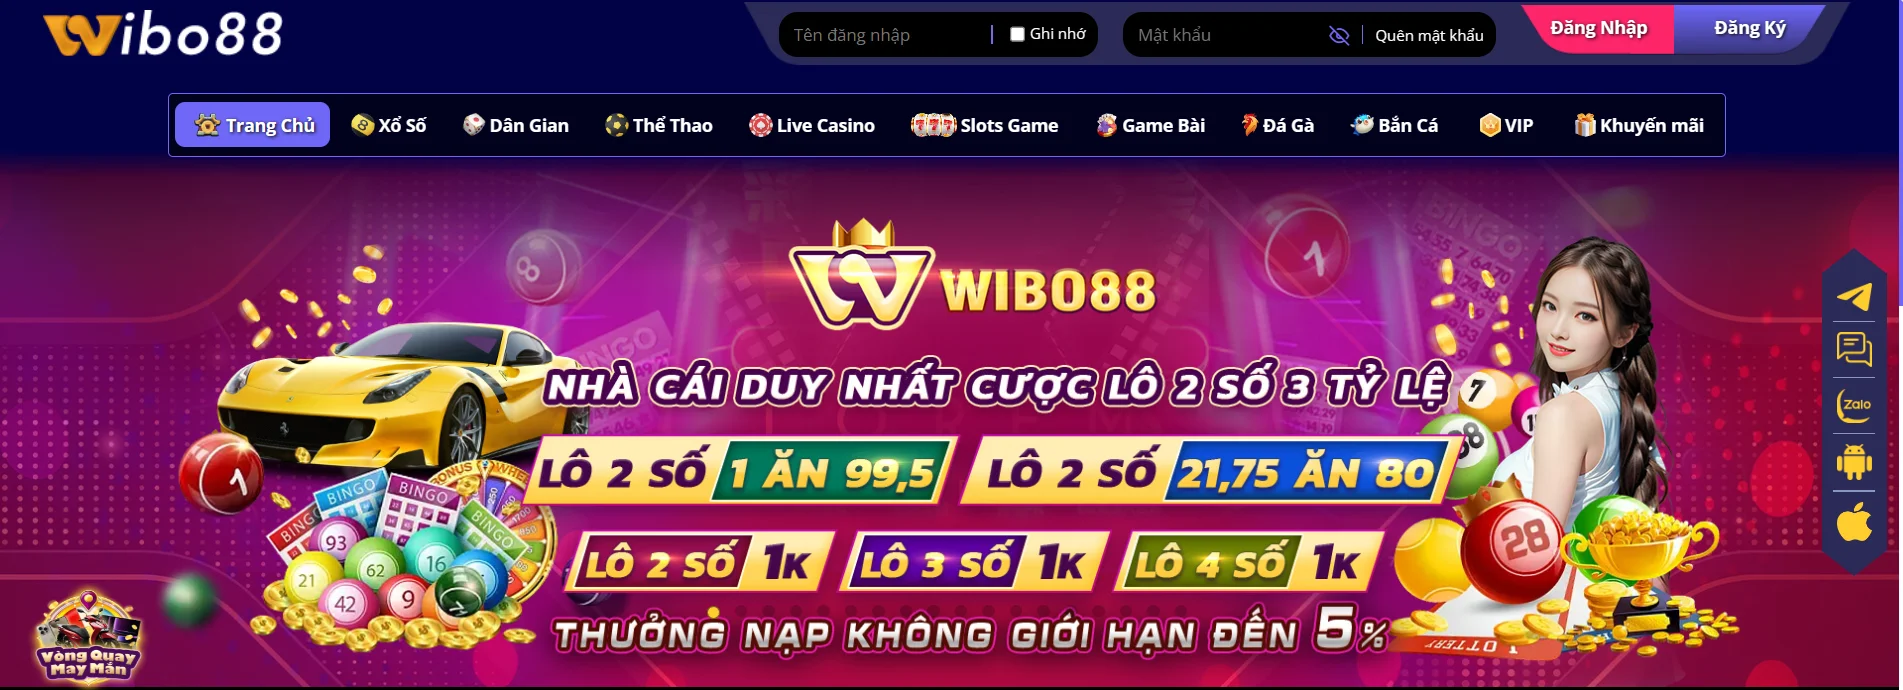 Wibo88 nhà cái cá cược trực tuyến hàng đầu Châu Á